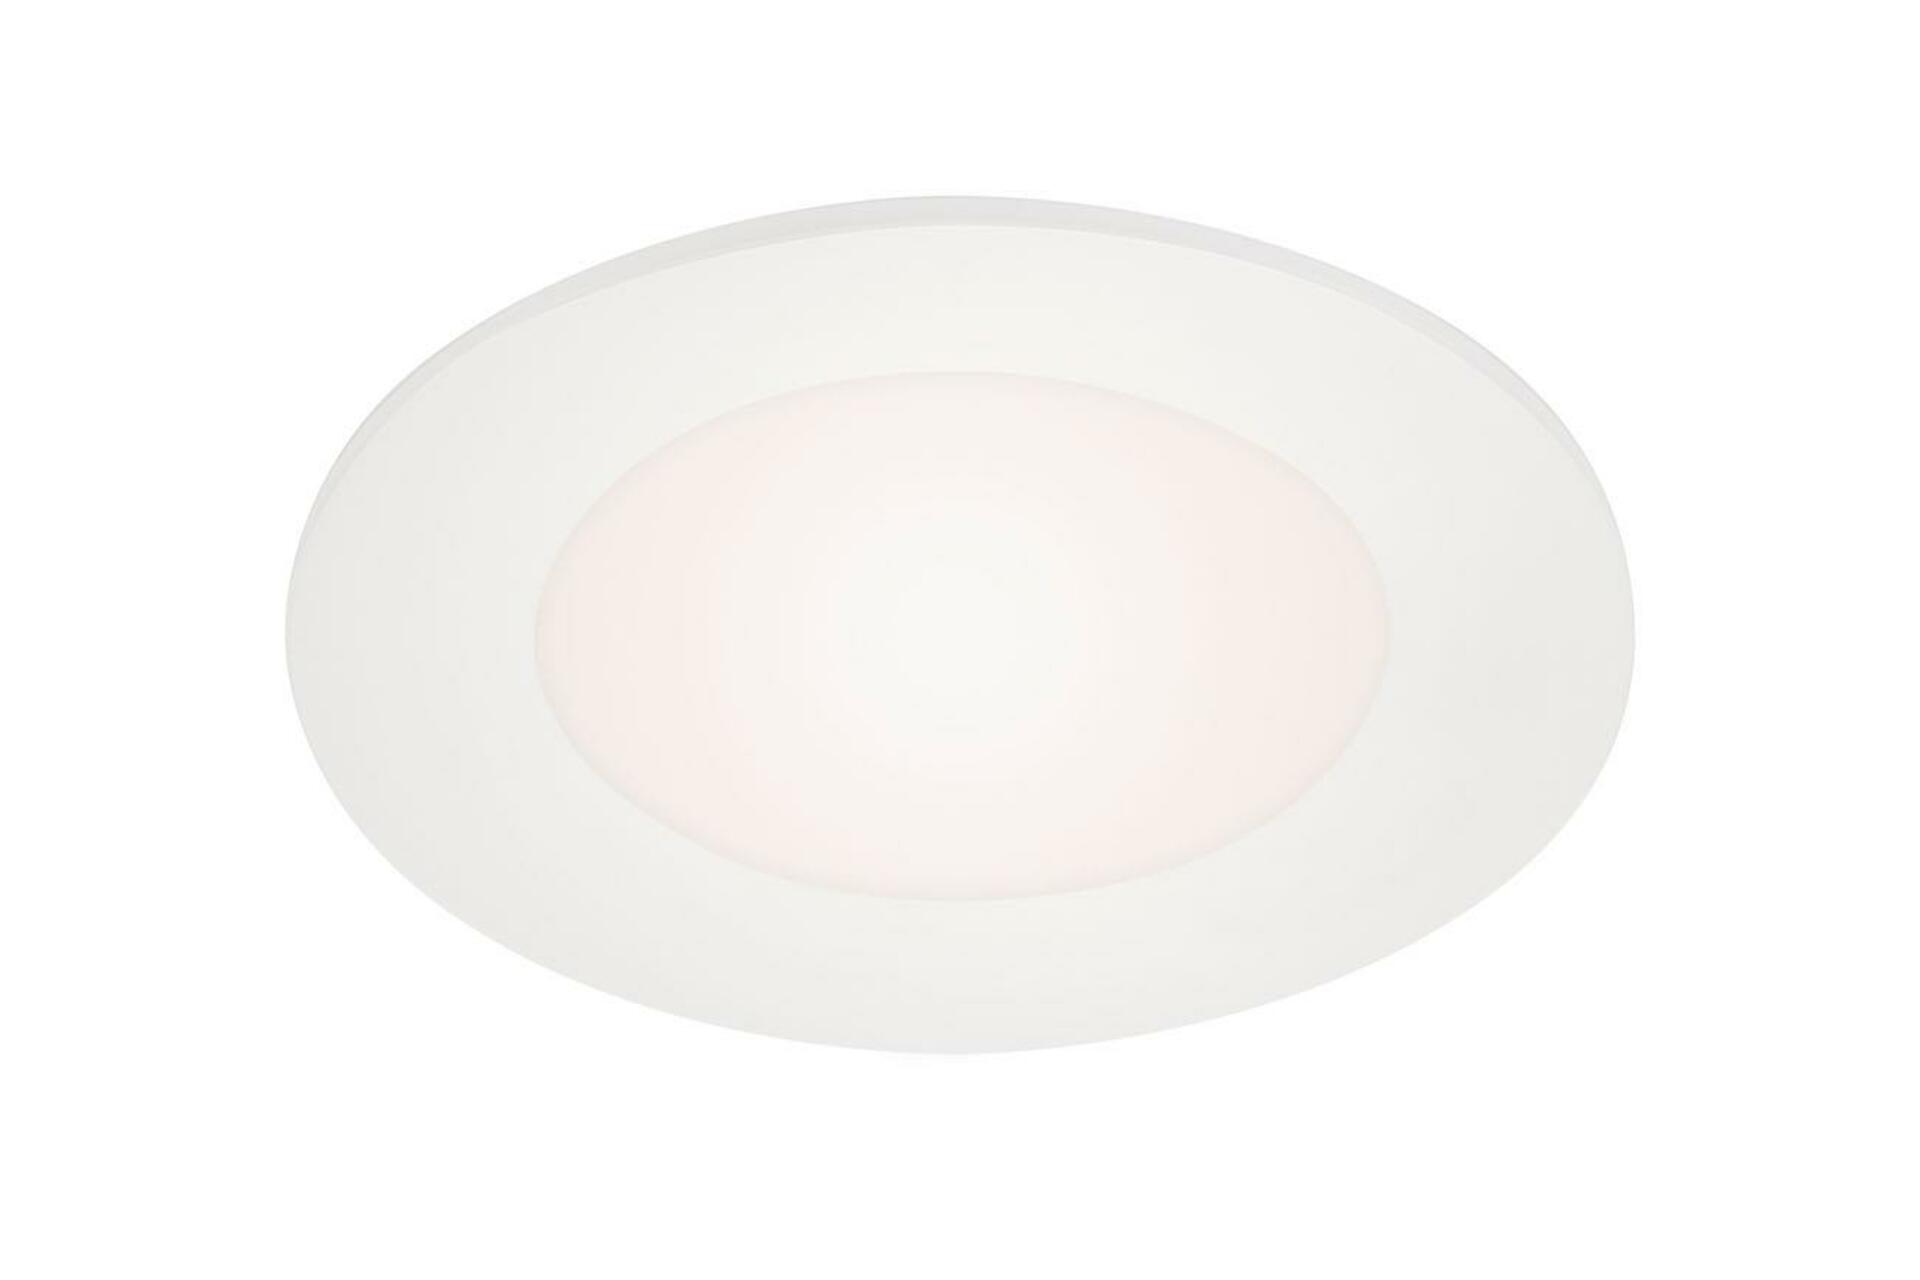 BRILONER LED vestavné svítidlo, pr. 8,6 cm, 3 W, bílé BRI 7125-416